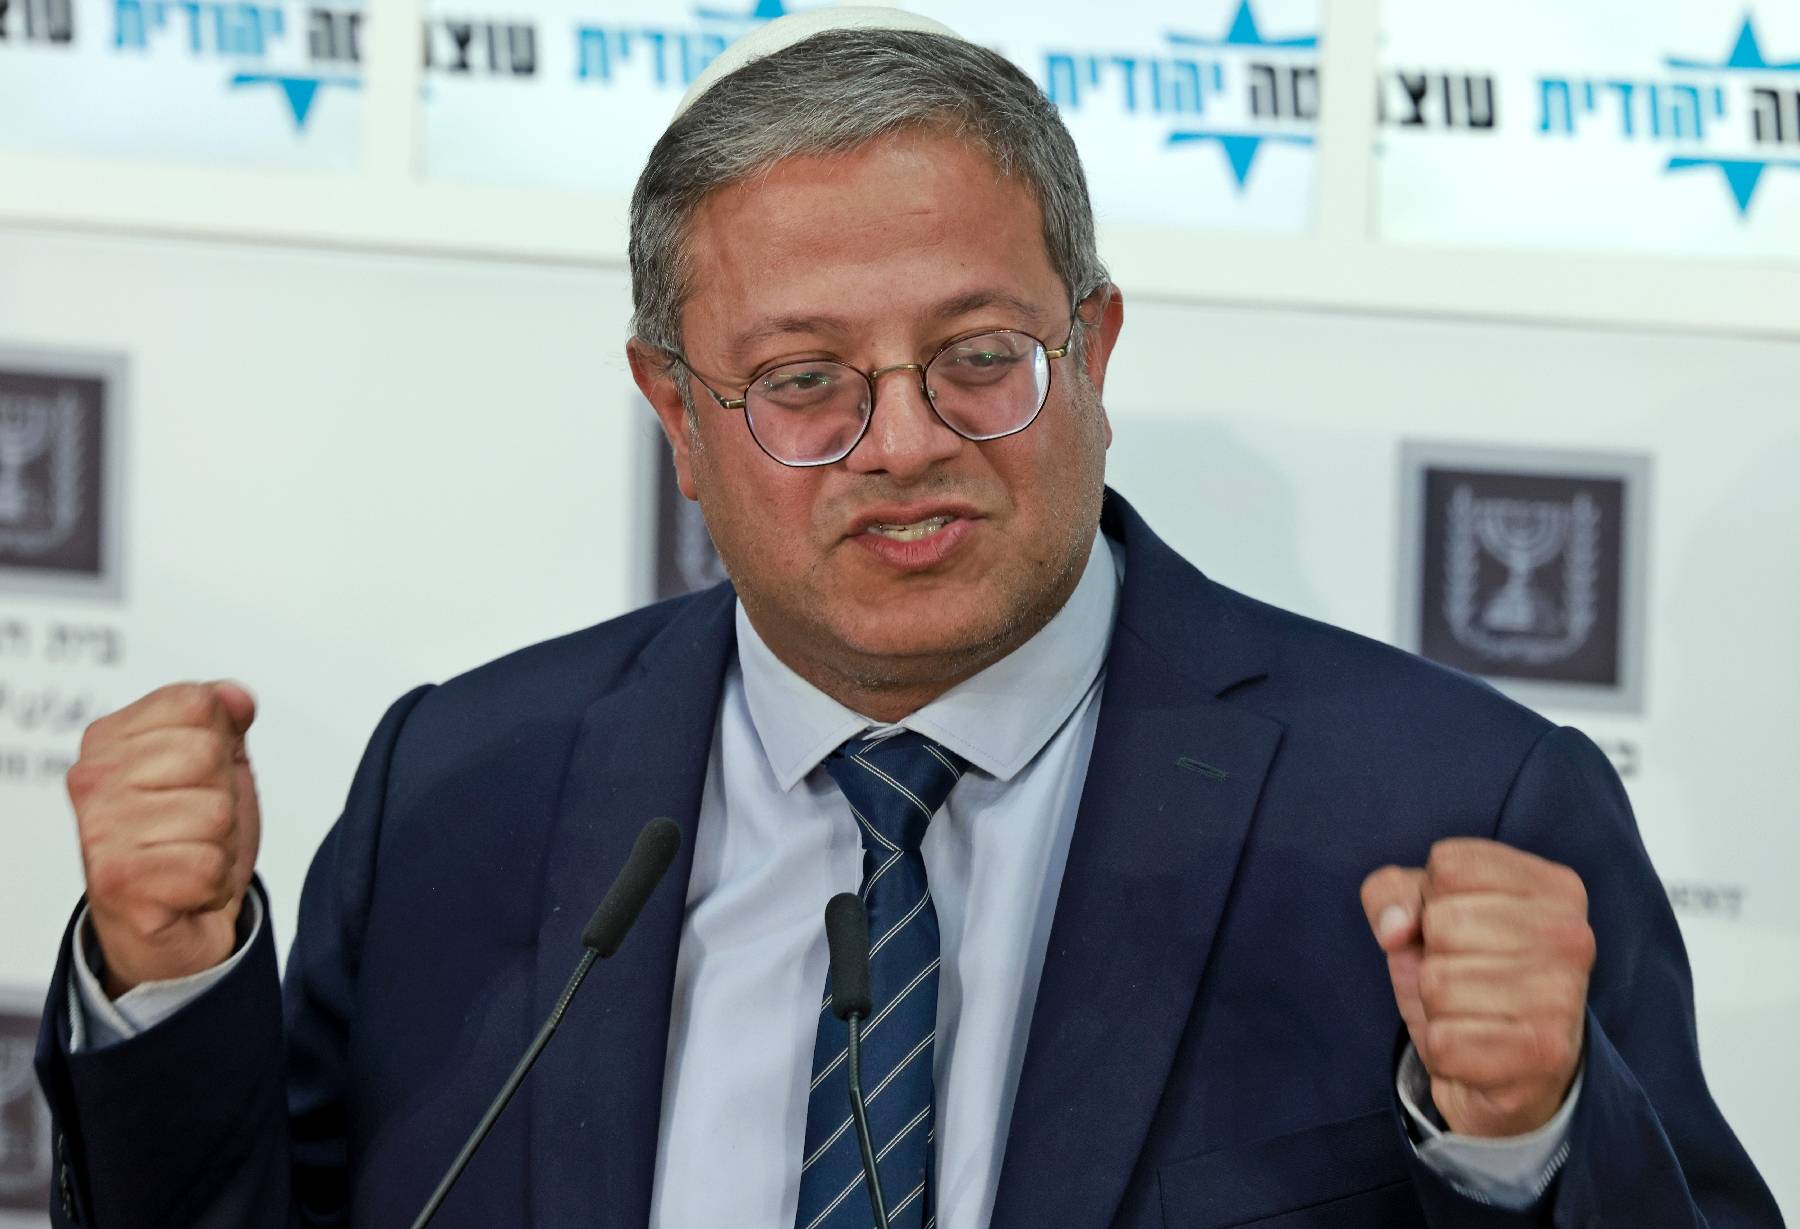 Le ministre israélien d'extrême droite Ben Gvir cible les détenus palestiniens